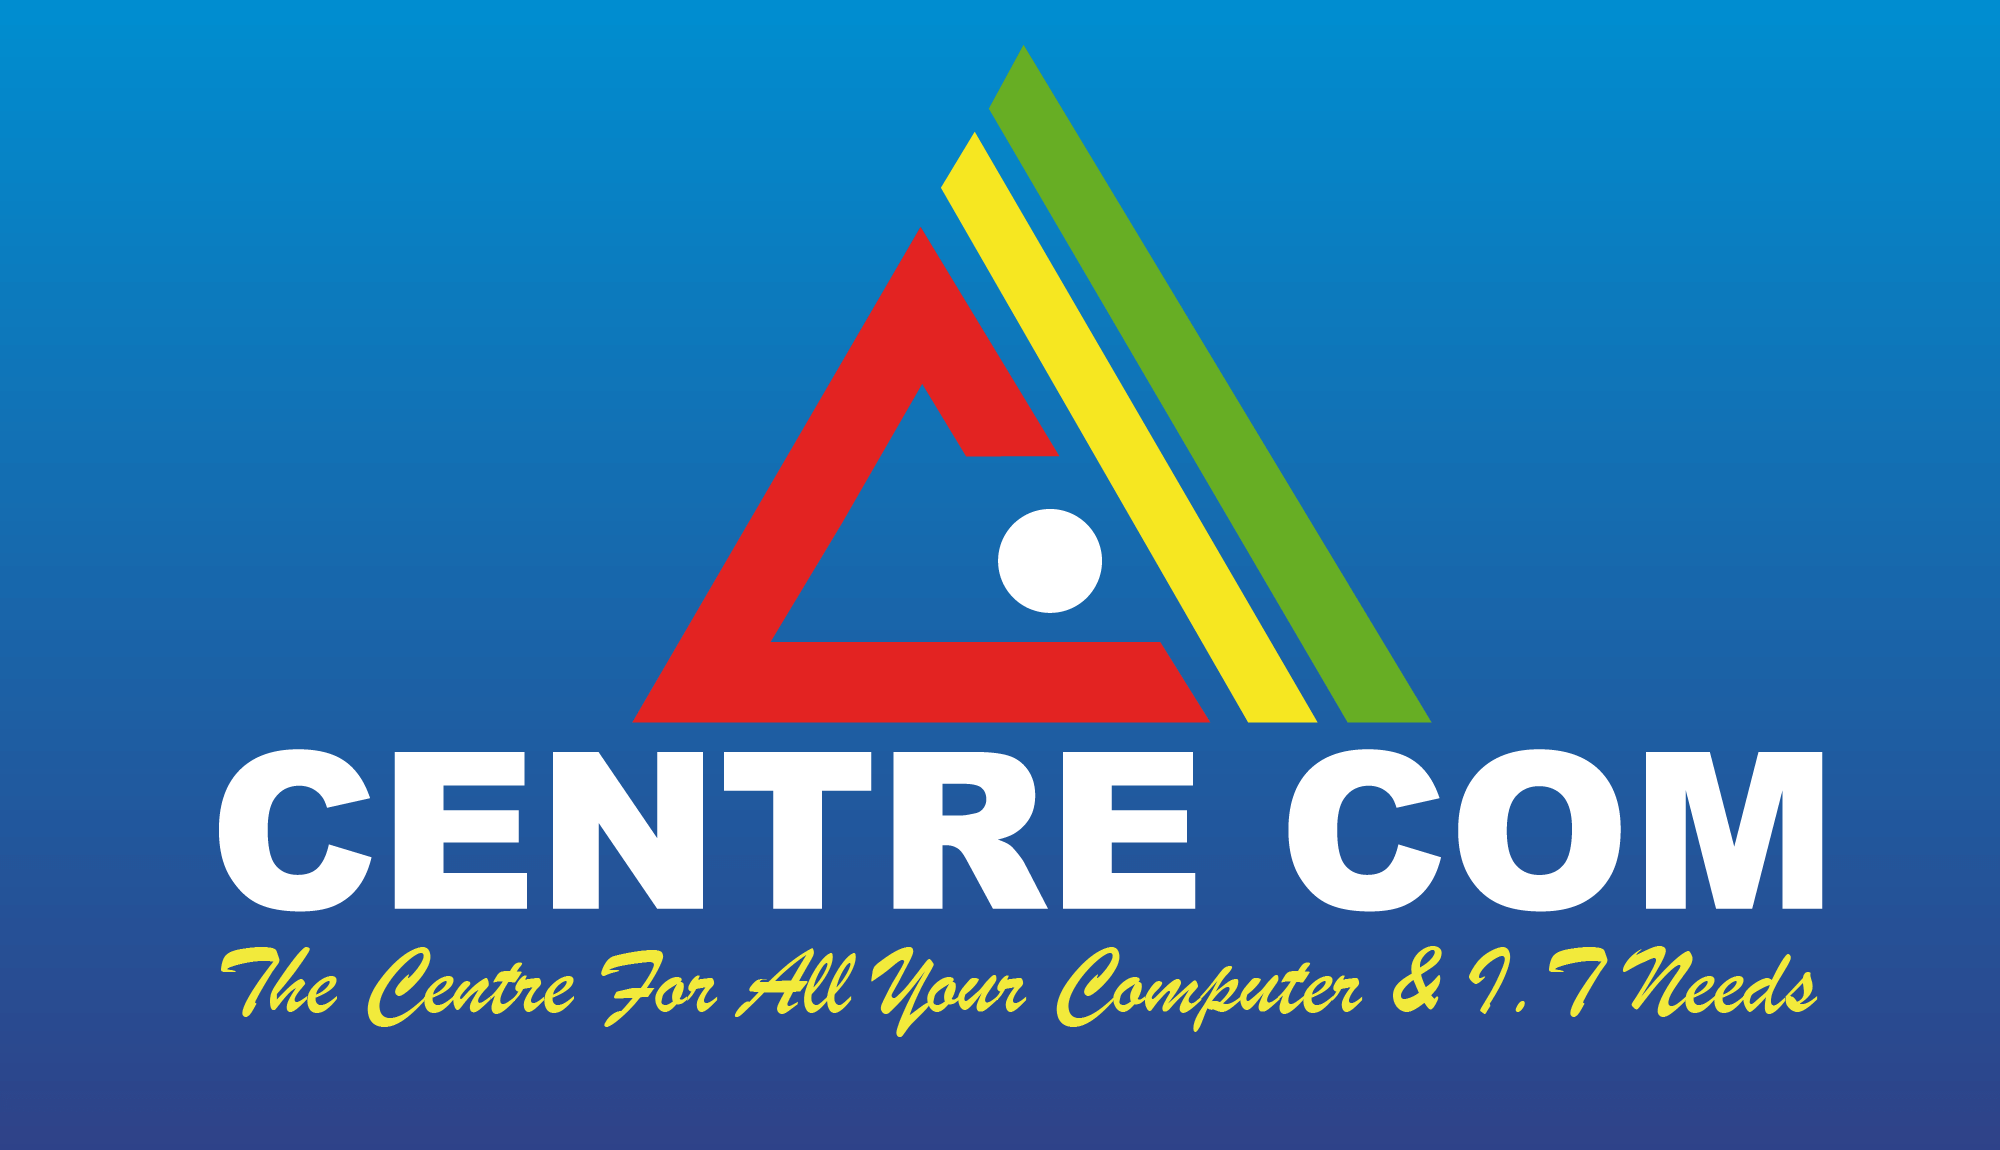 Centrecom